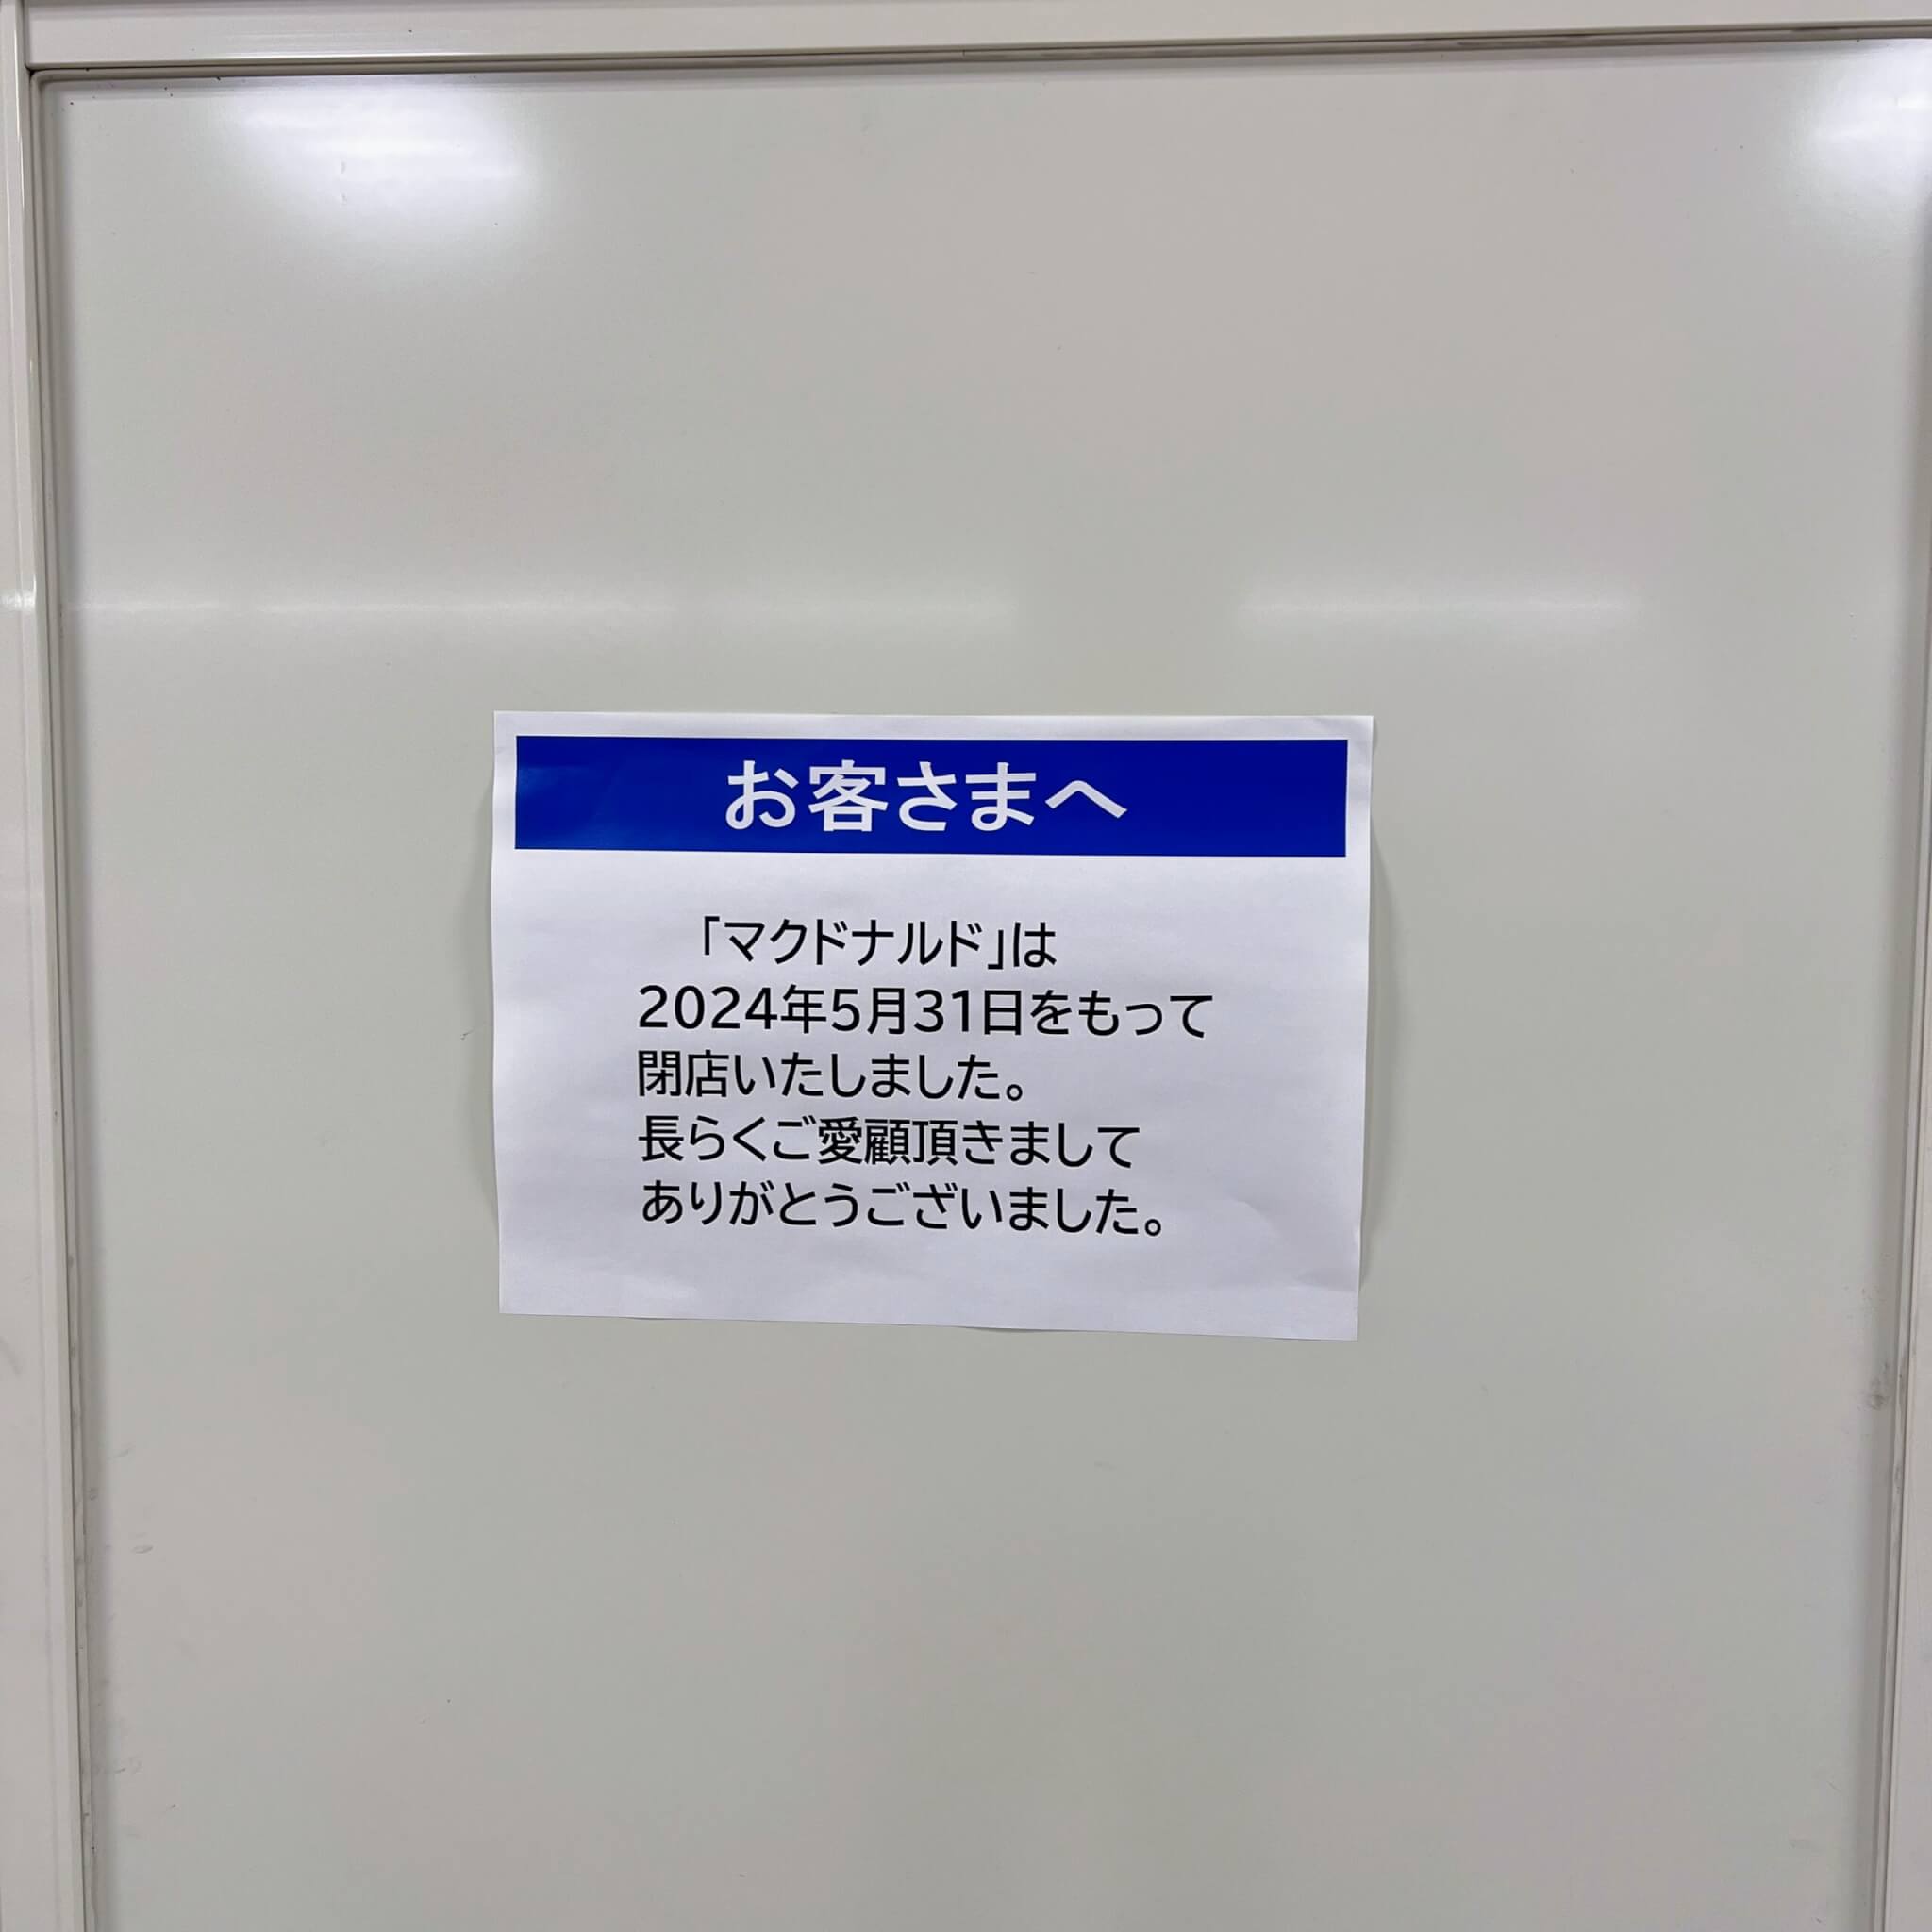 マクドナルドイオン加古川店閉店のお知らせ